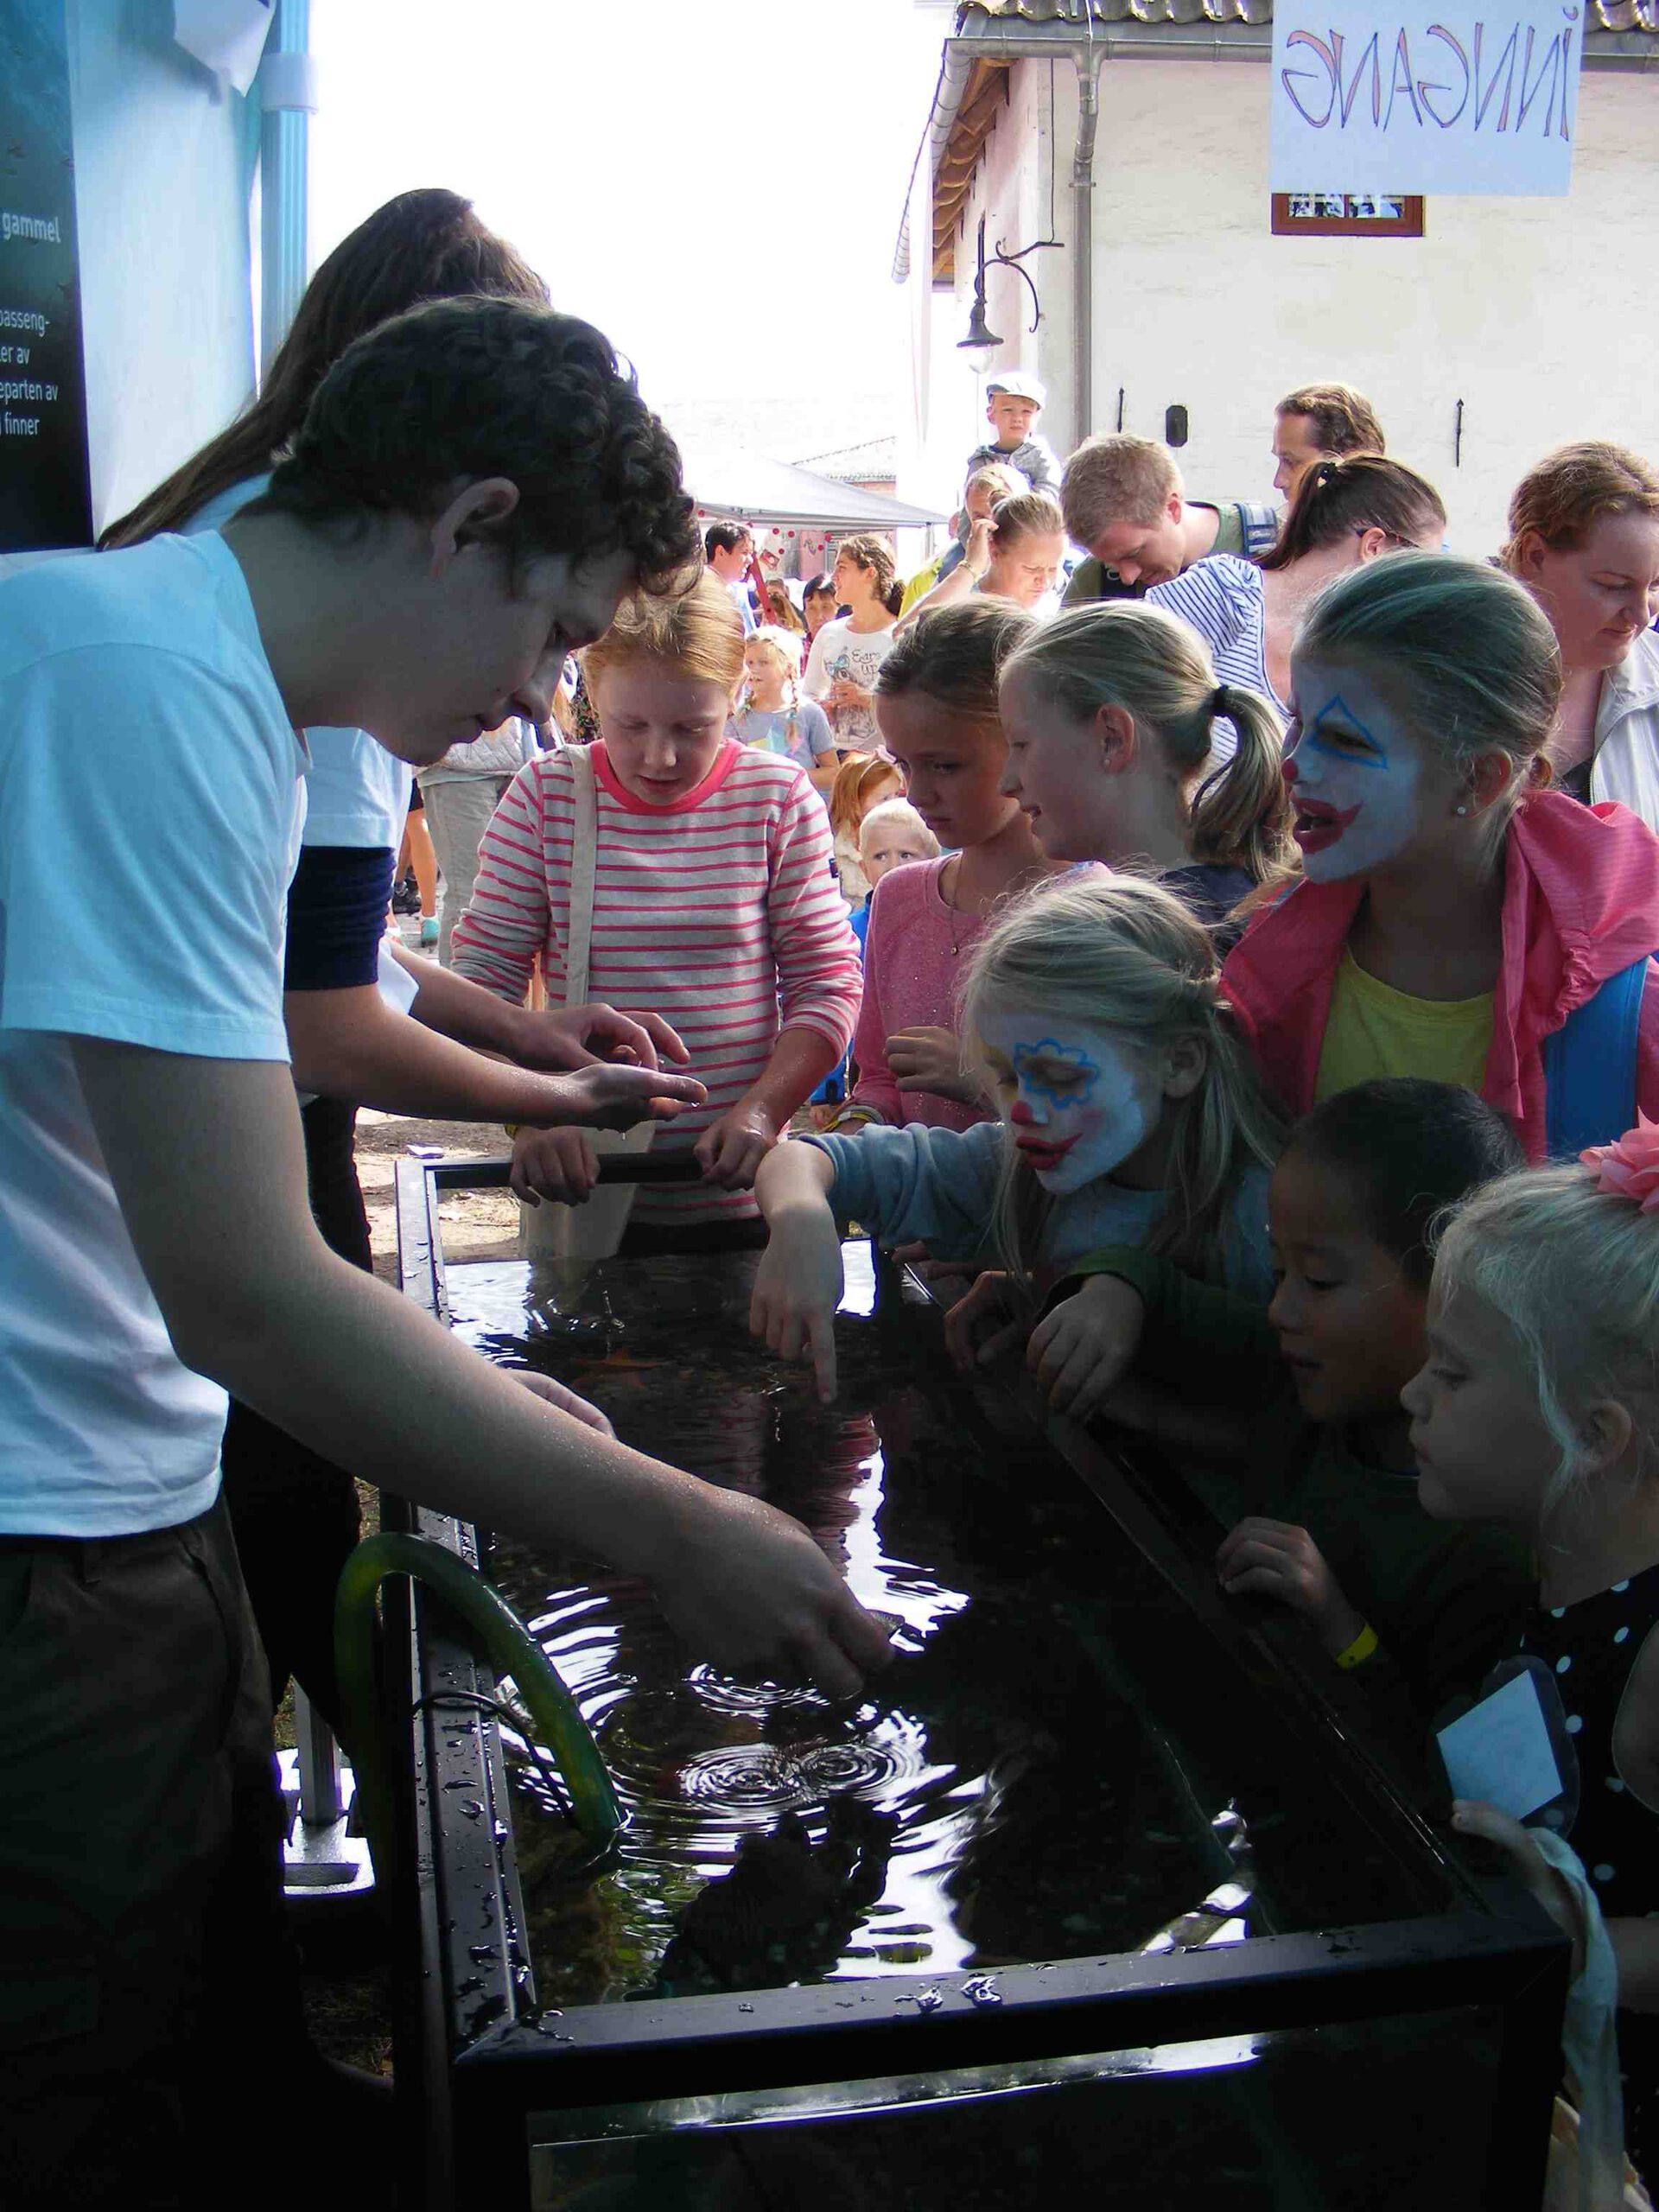 Children around aqvarium